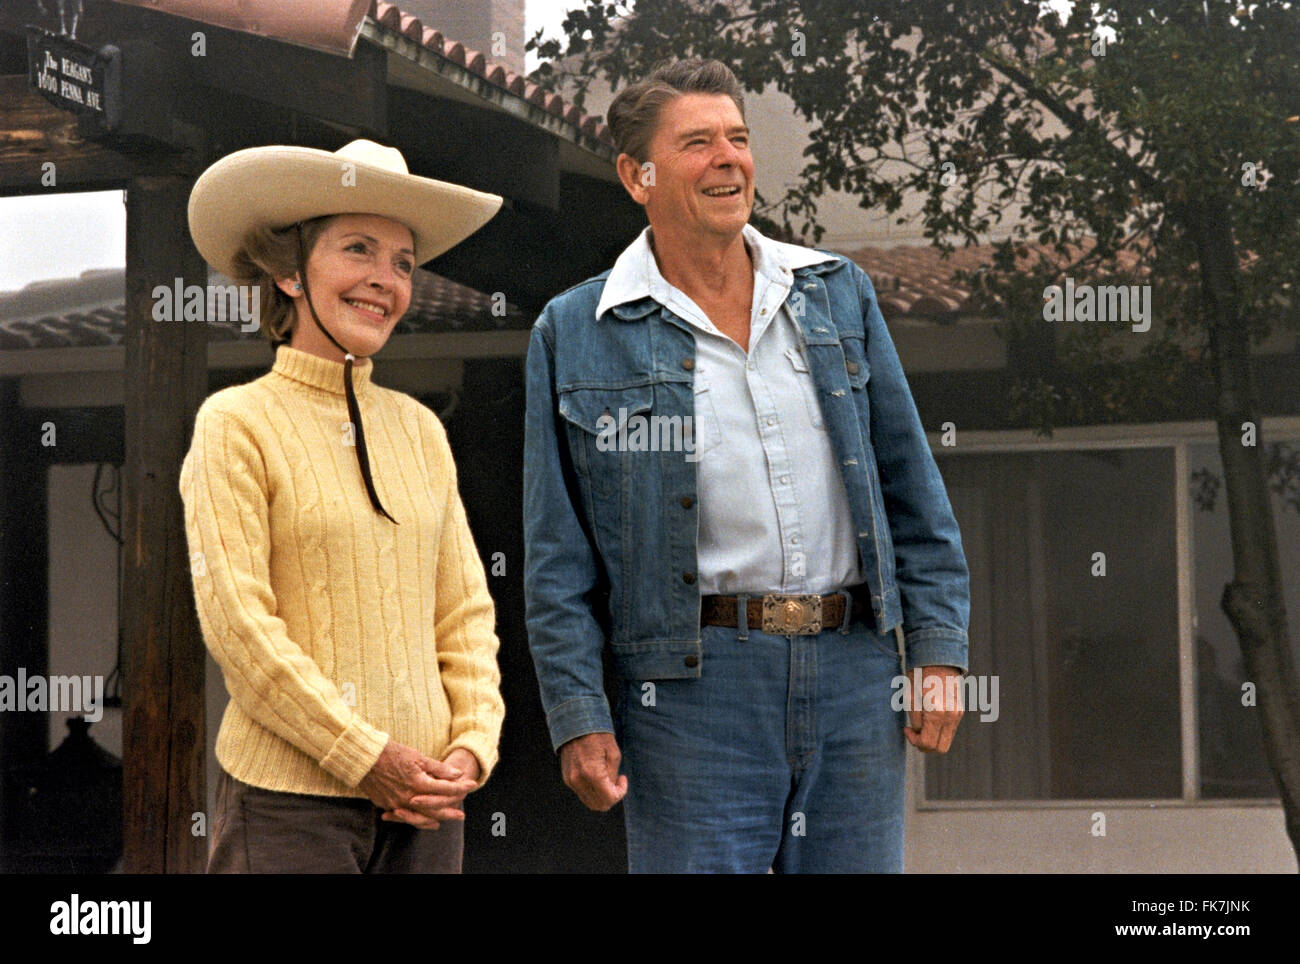 President Ronald Reagan and First Lady Nancy Reagan at Rancho del Cielo August 13, 1981 in Santa Barbara, California. Stock Photo